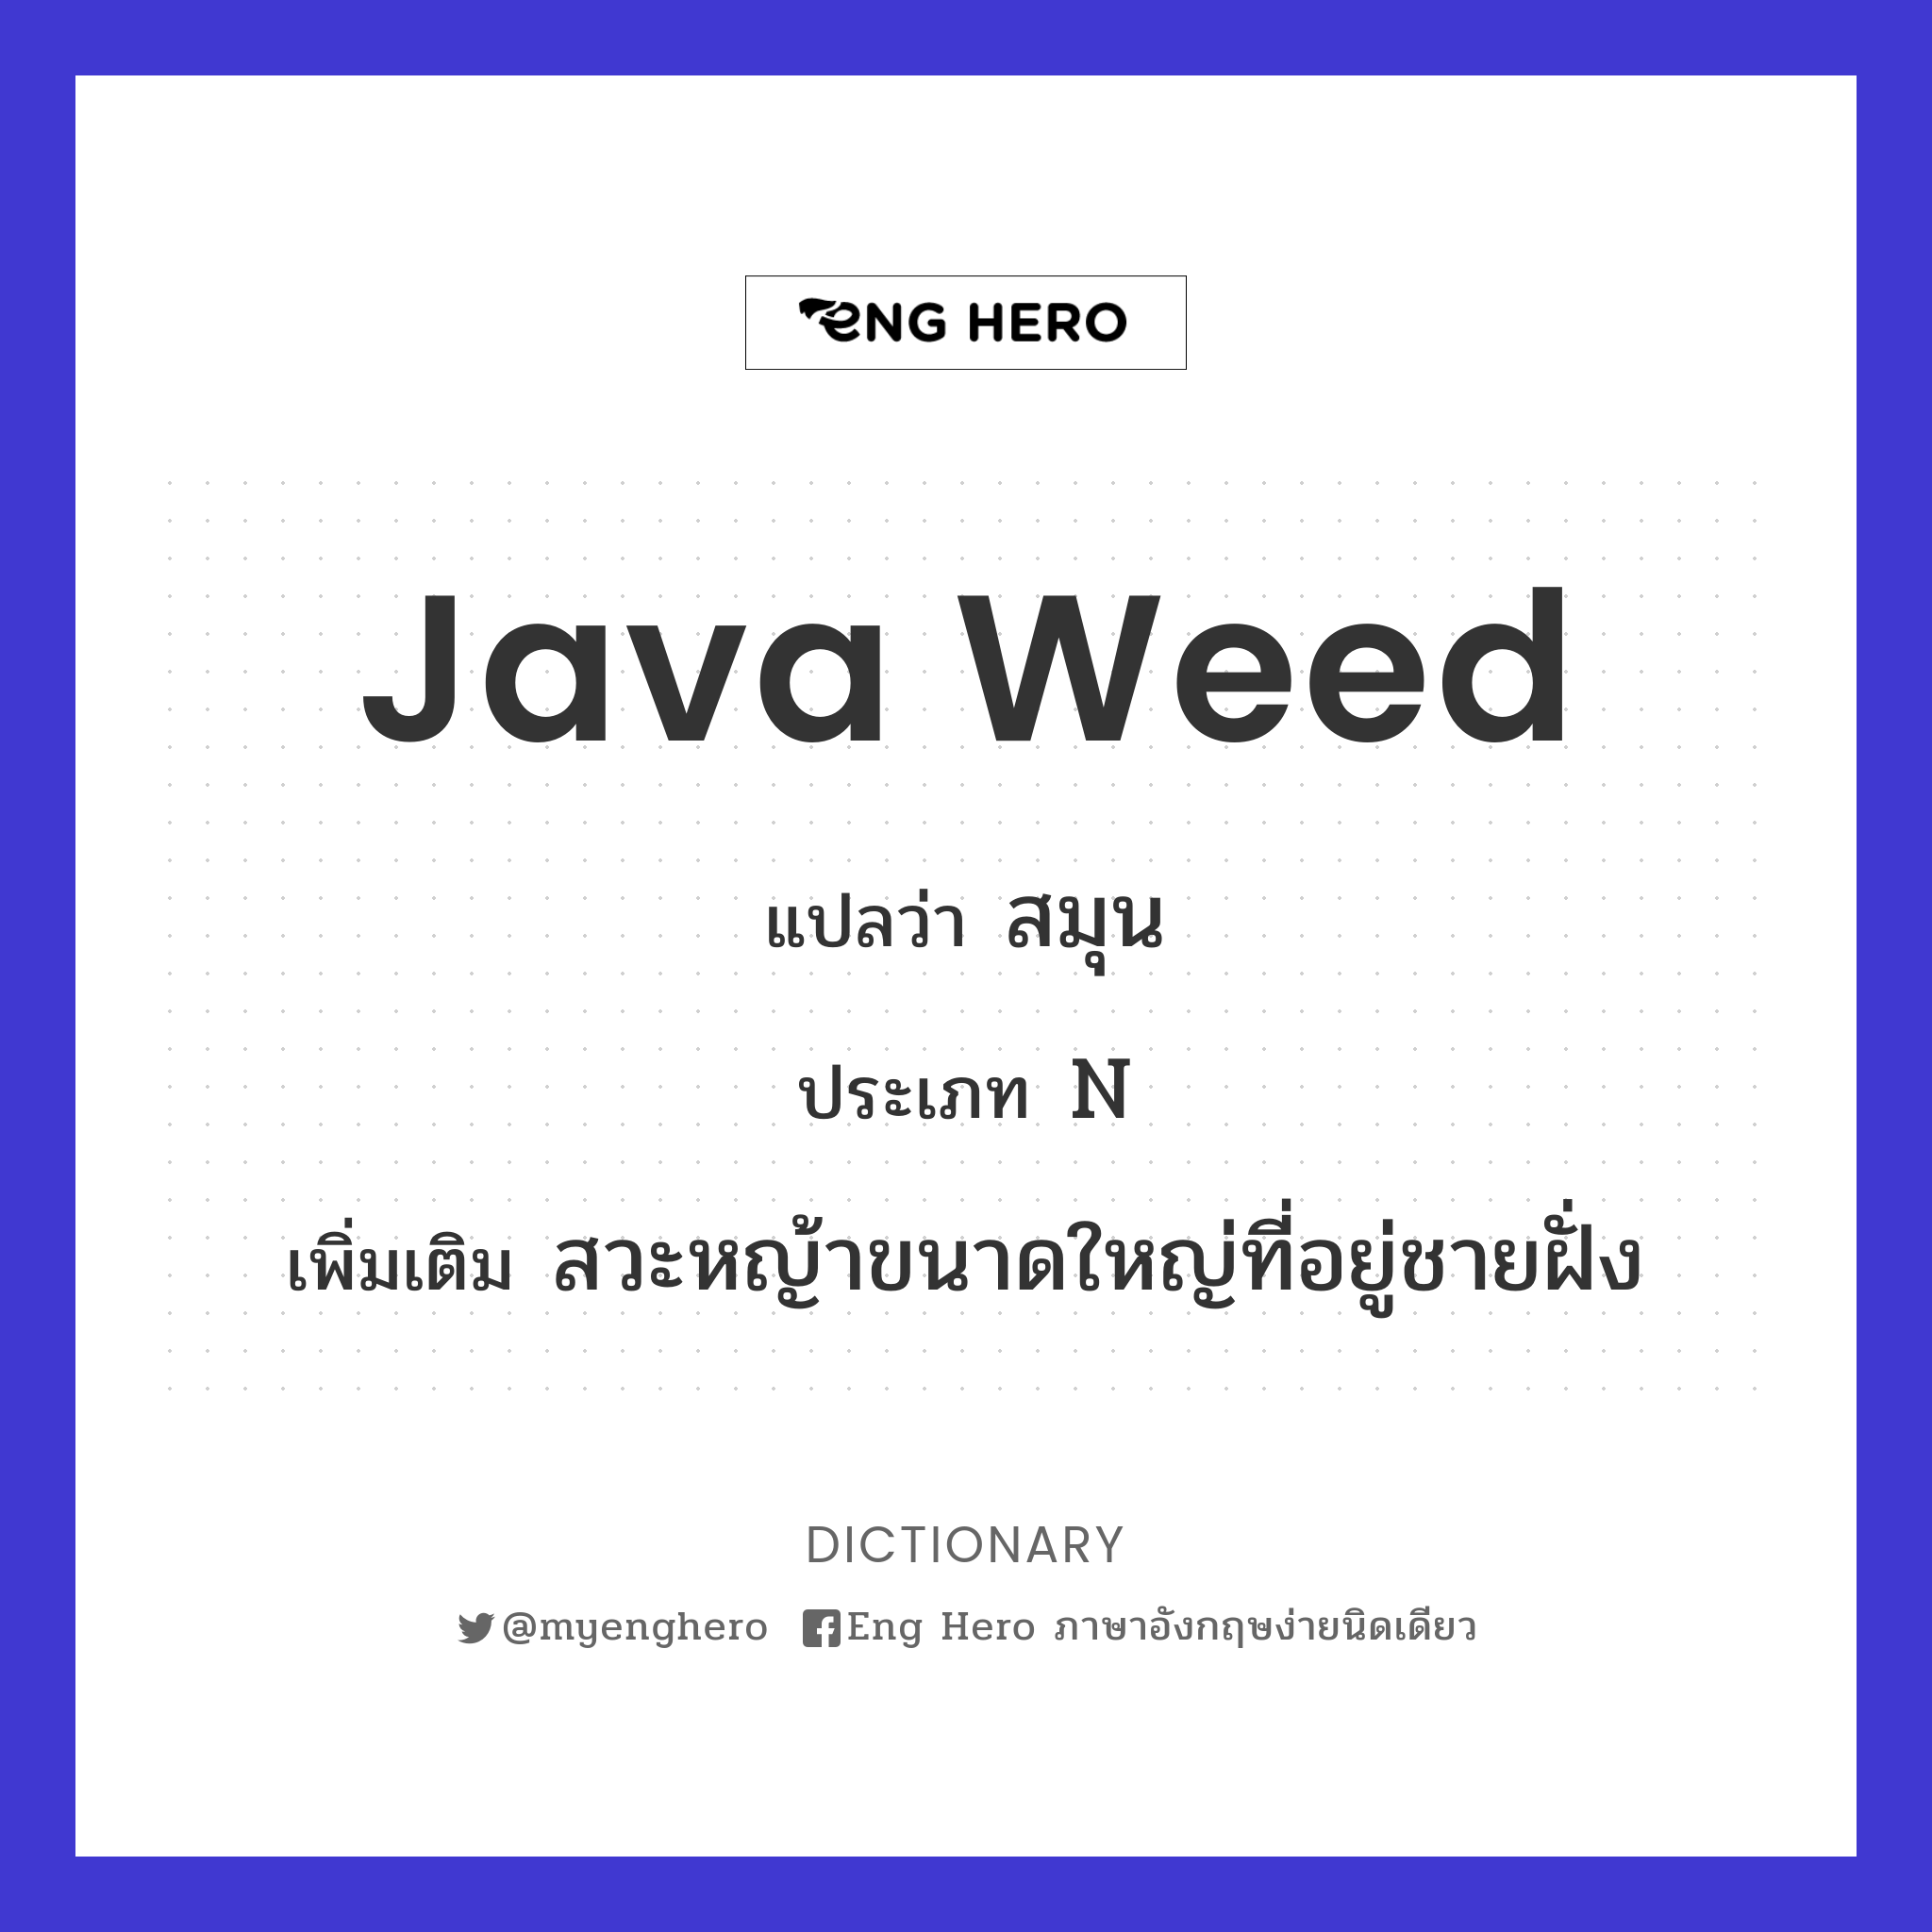 Java weed